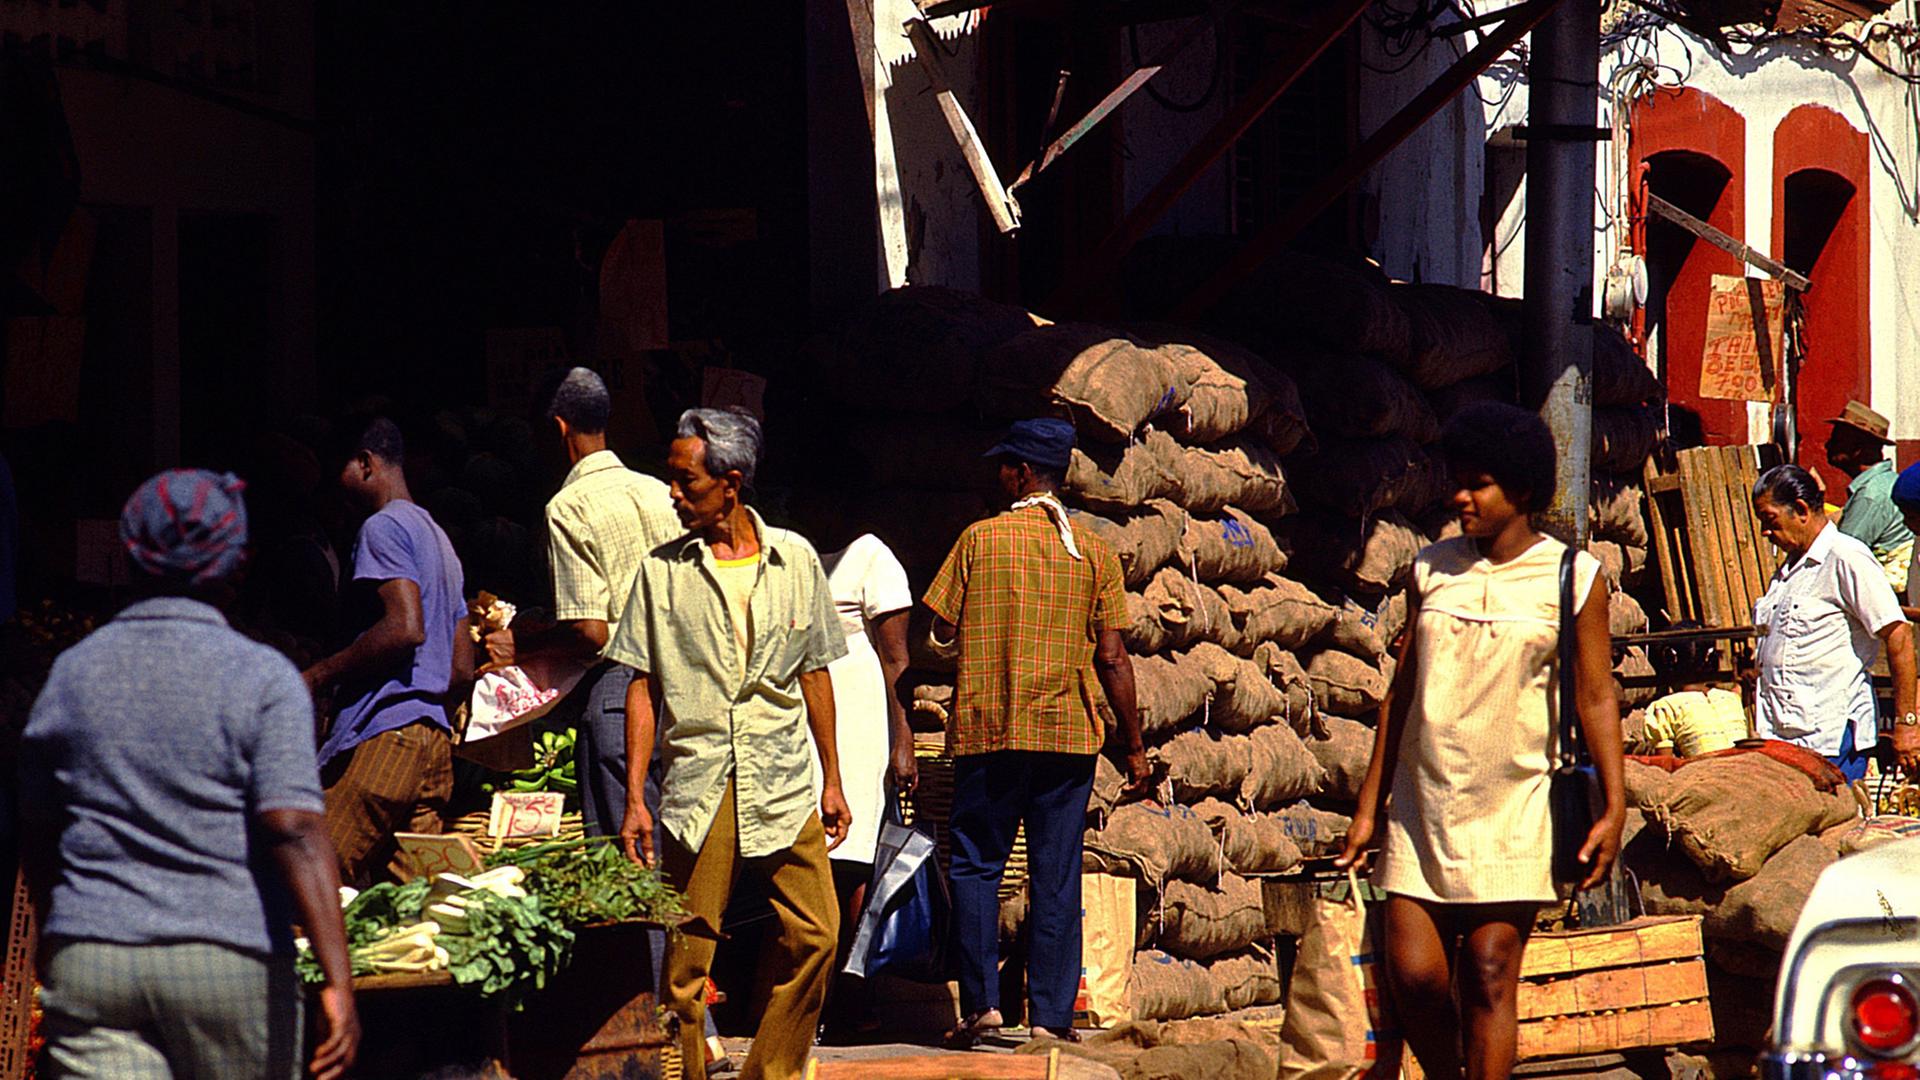 Markt in Port of Spain auf Trinidad, aufgenommen 2004.